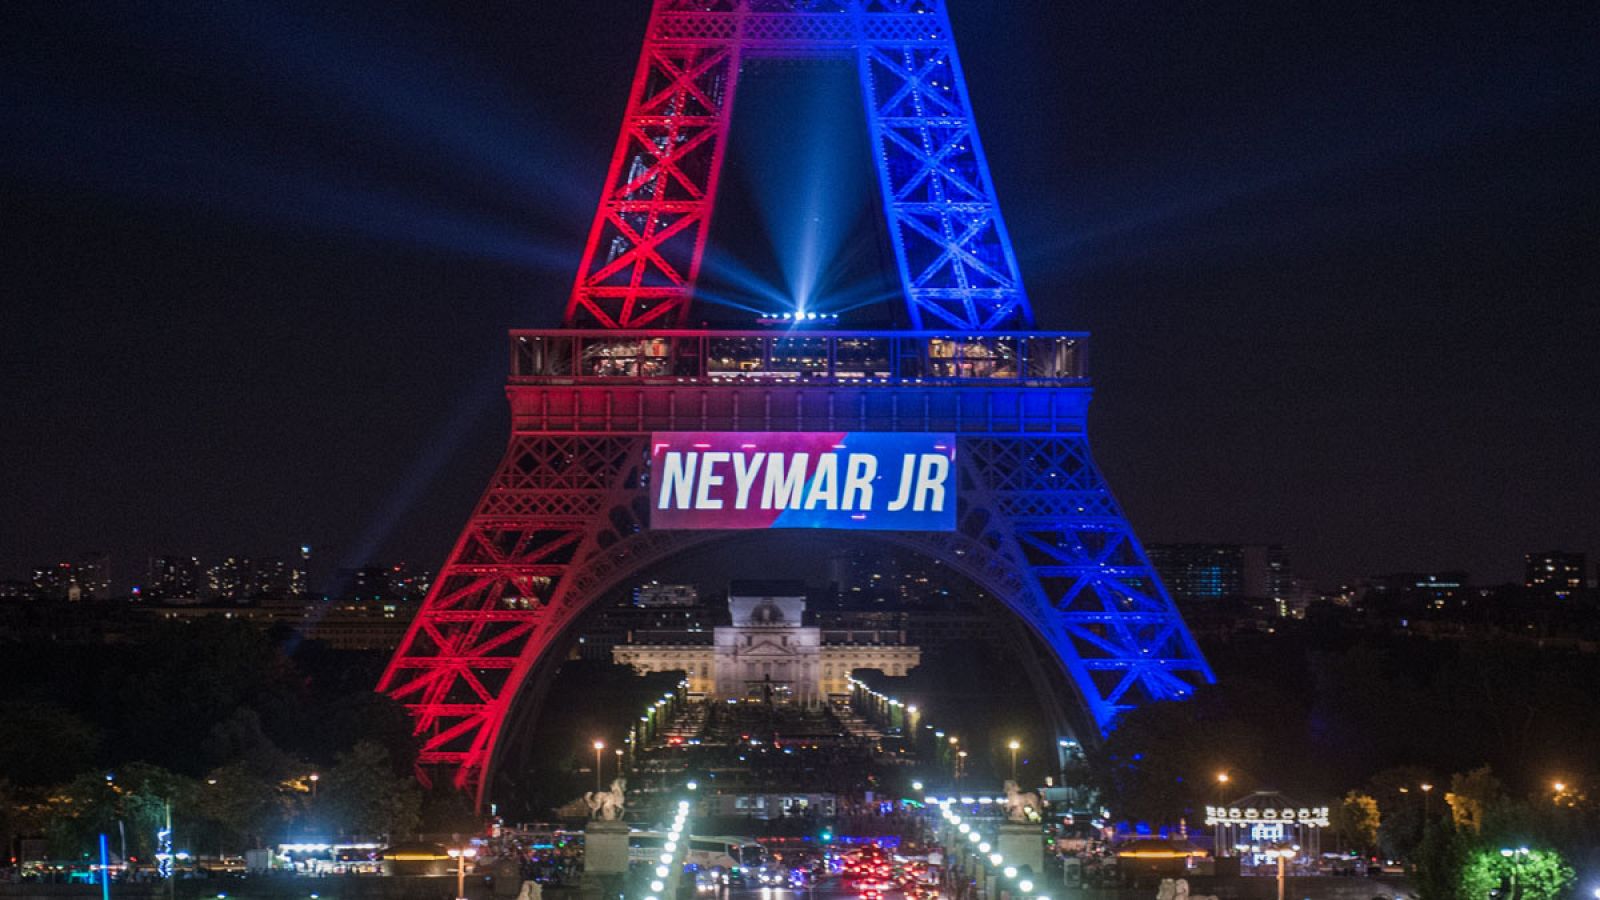 La Torre Eiffel da la bienvenida al futbolista Neymar